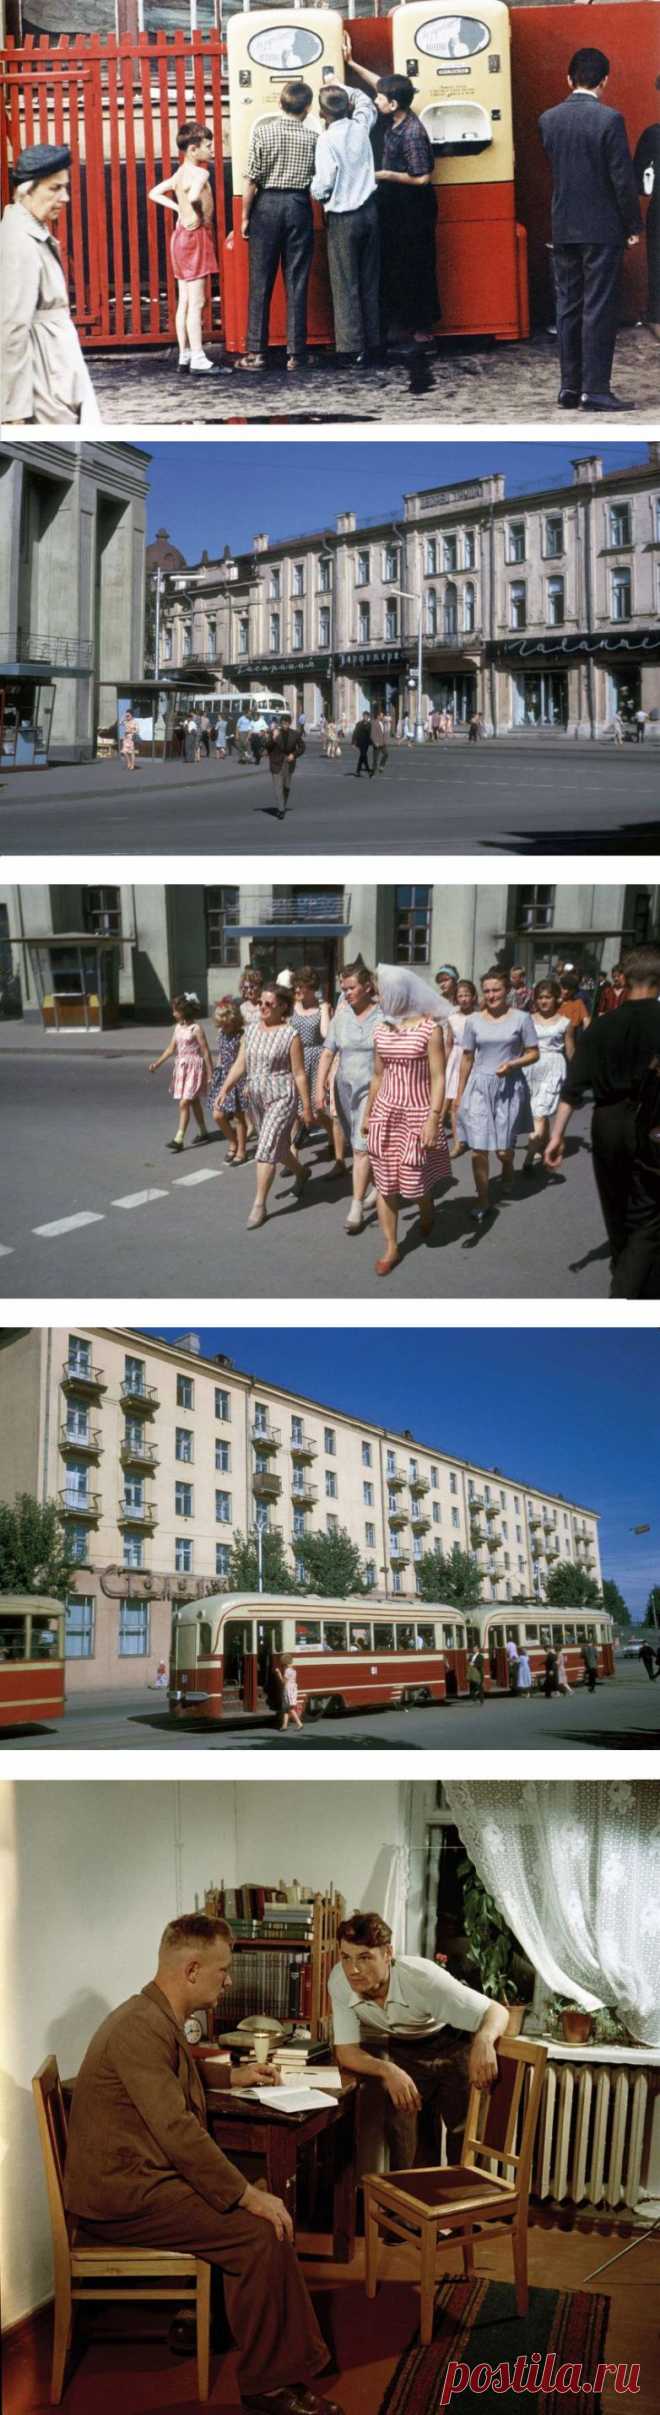 60-е годы в цвете / Назад в СССР / Back in USSR